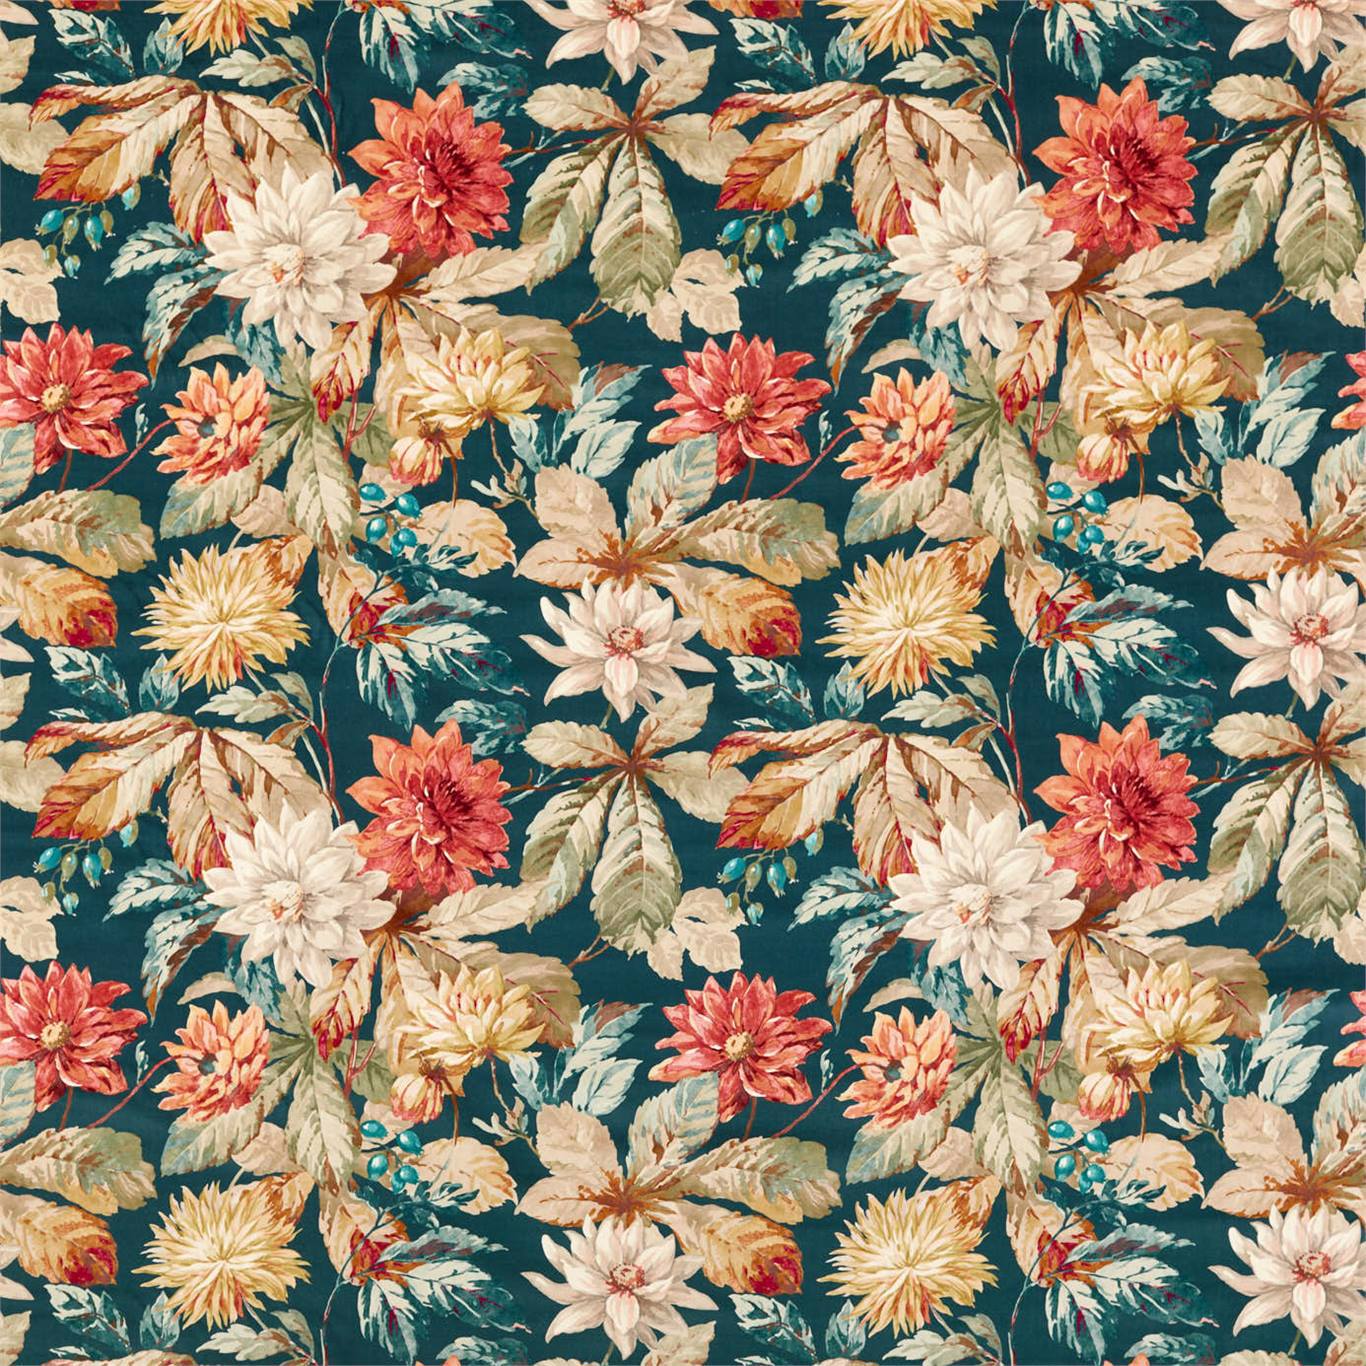 Dahlia & Rosehip Velvet Fabric by Sanderson - DYSI226533 - Teal/Russet (Velvet)